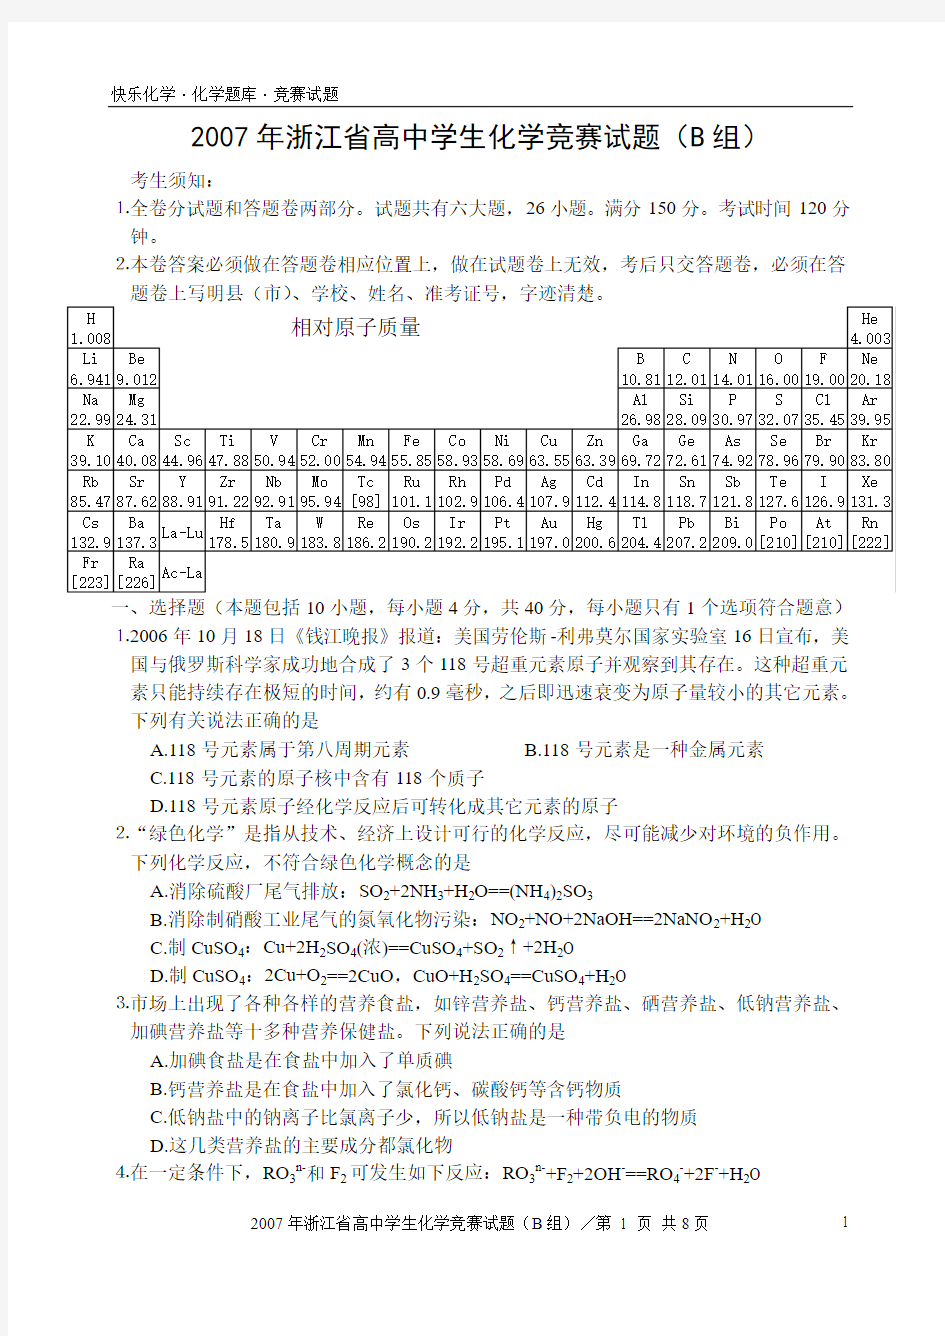 2007年浙江省高中学生化学竞赛试题(B组)(含答案)